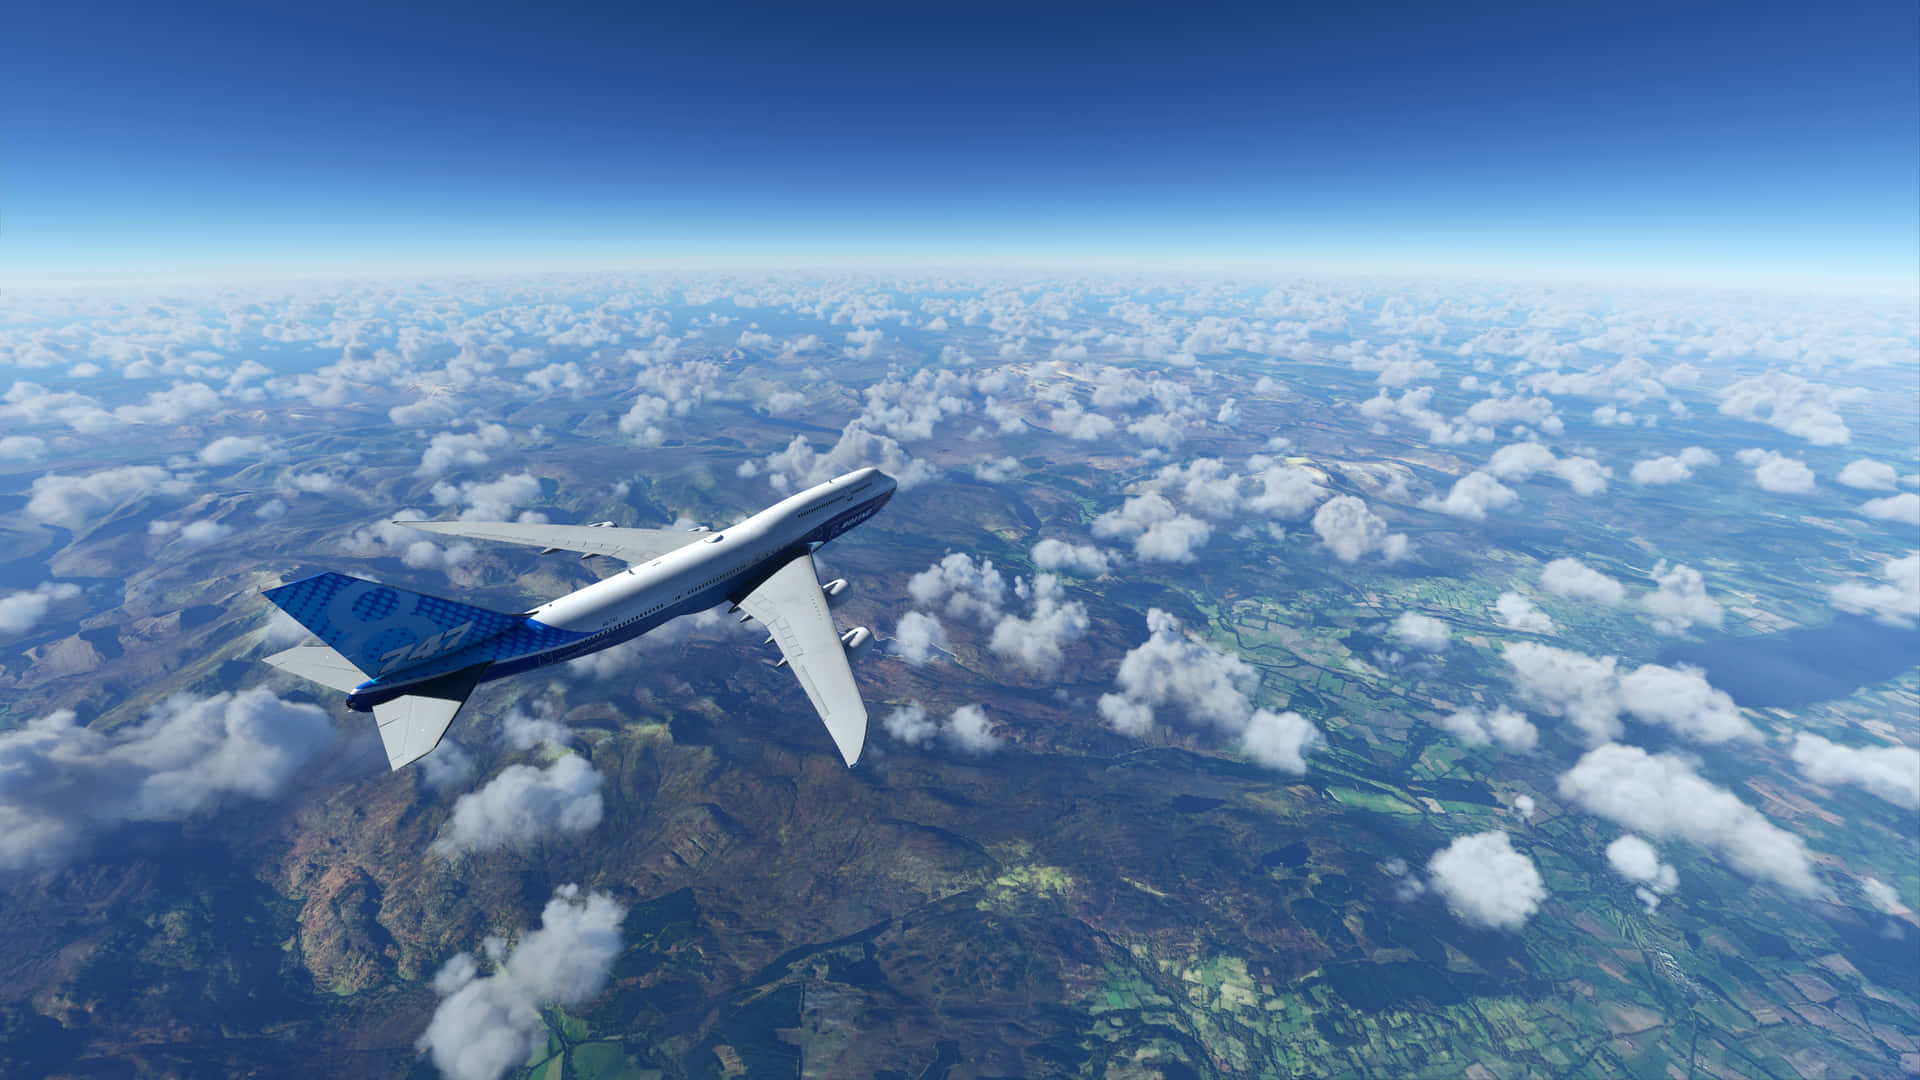 4kmicrosoft Flight Simulator-bakgrund - Ett Flygplan Som Flyger Över Molnen.